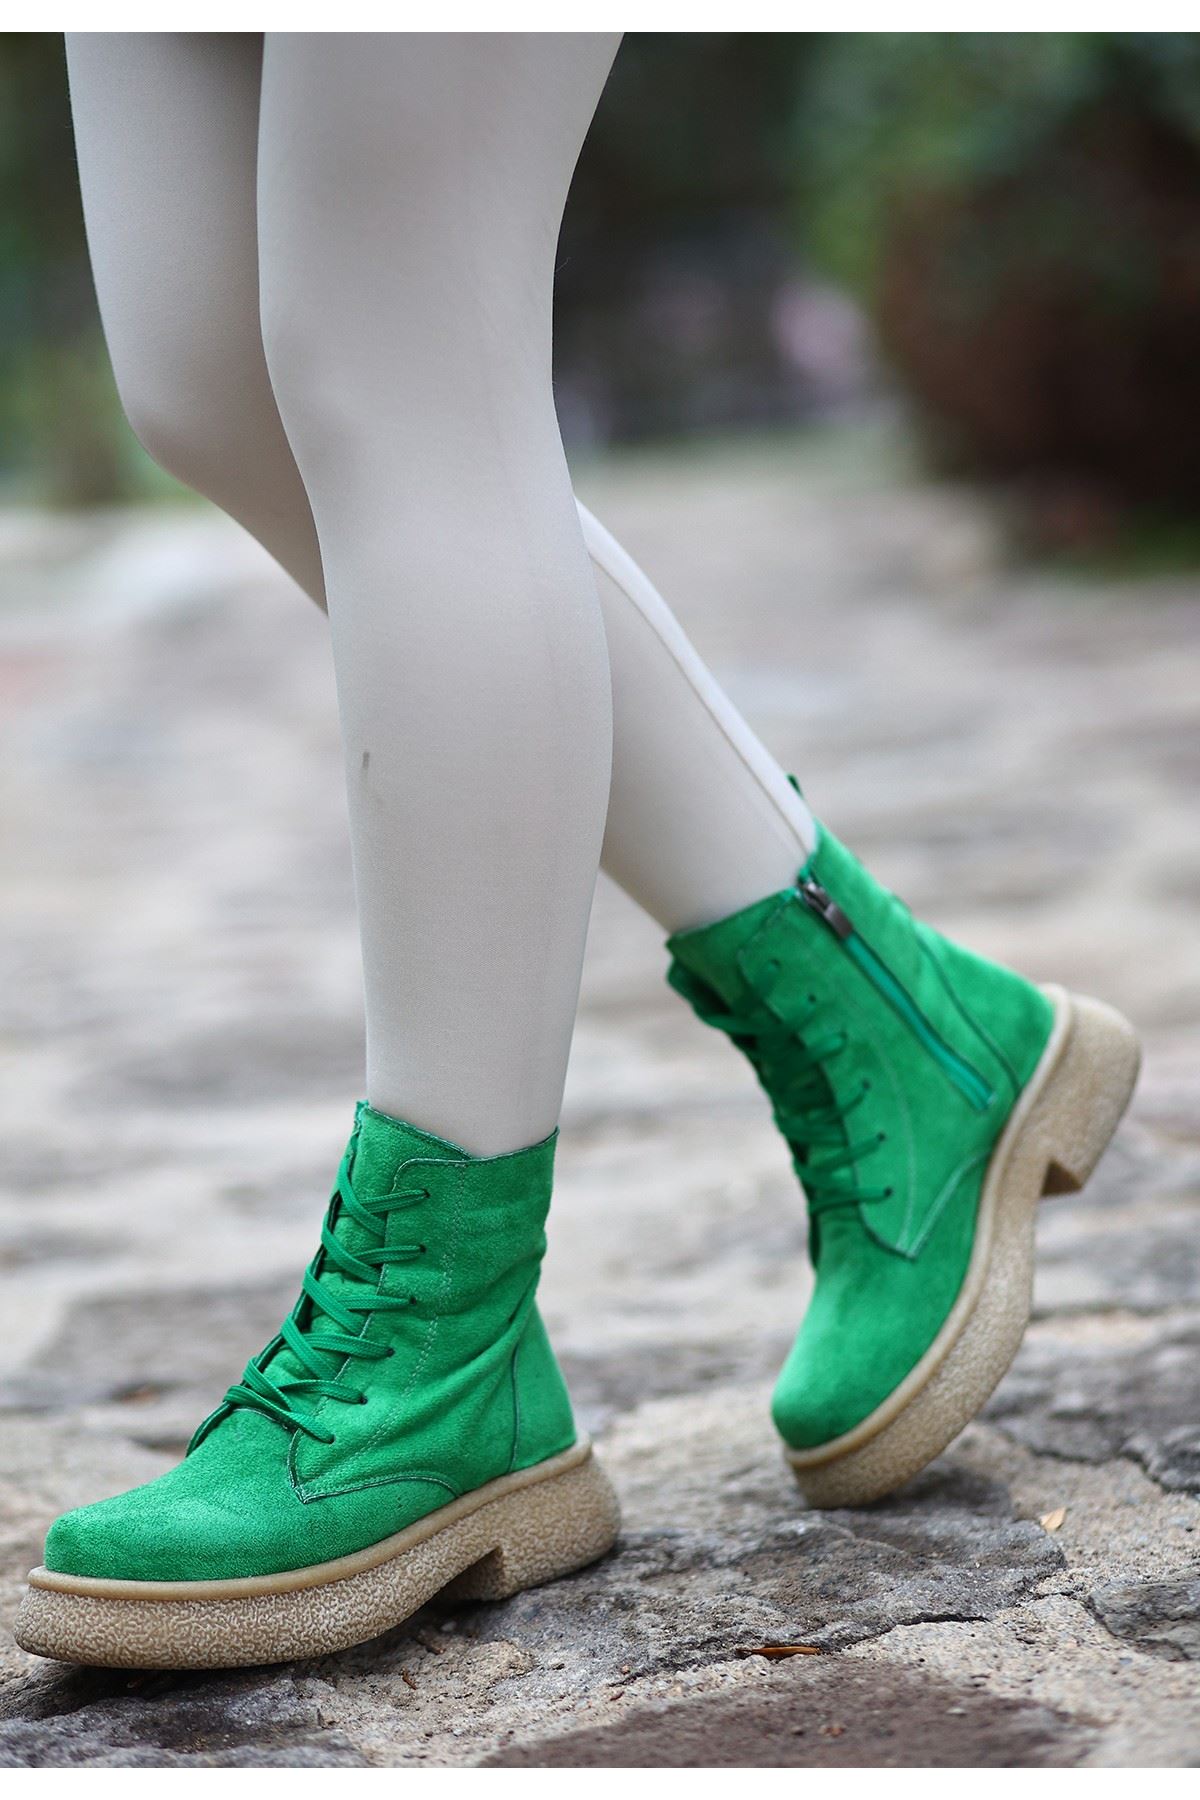 Mida Shoes Resi Yeşil Süet Bağcıklı Kadın Bot